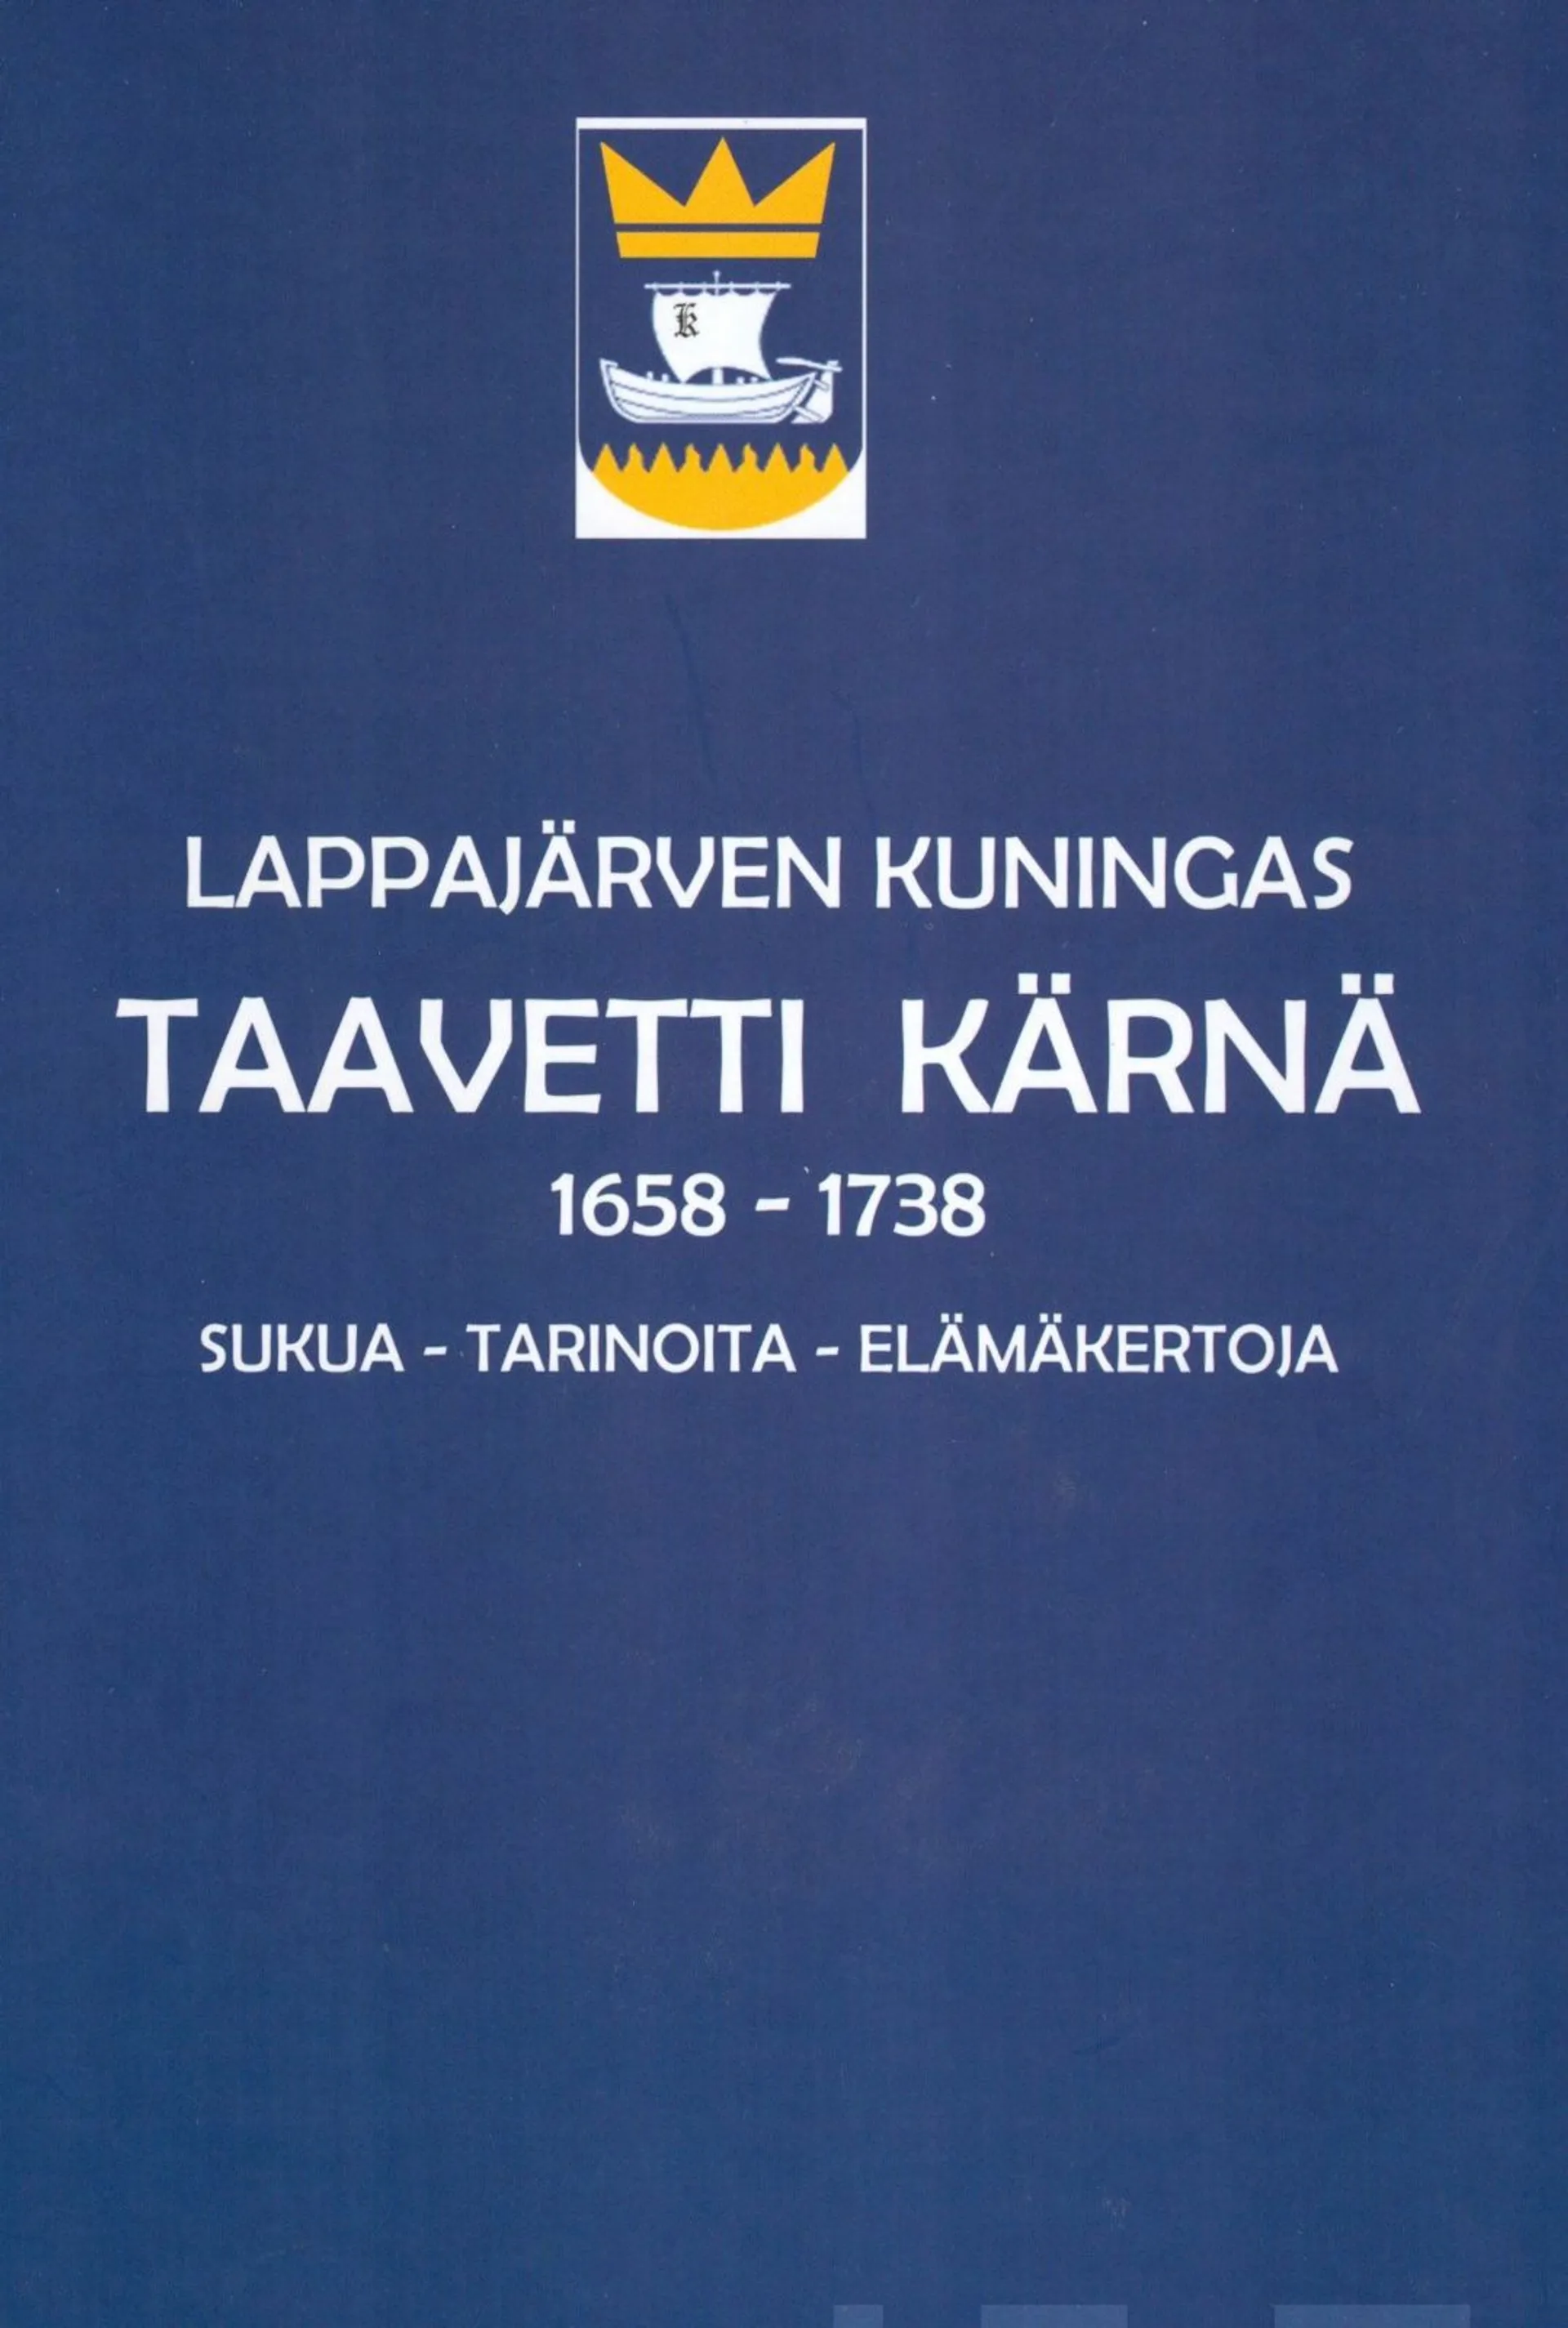 Hyytinen, Lappajärven kuningas Taavetti Kärnä 1686-1738